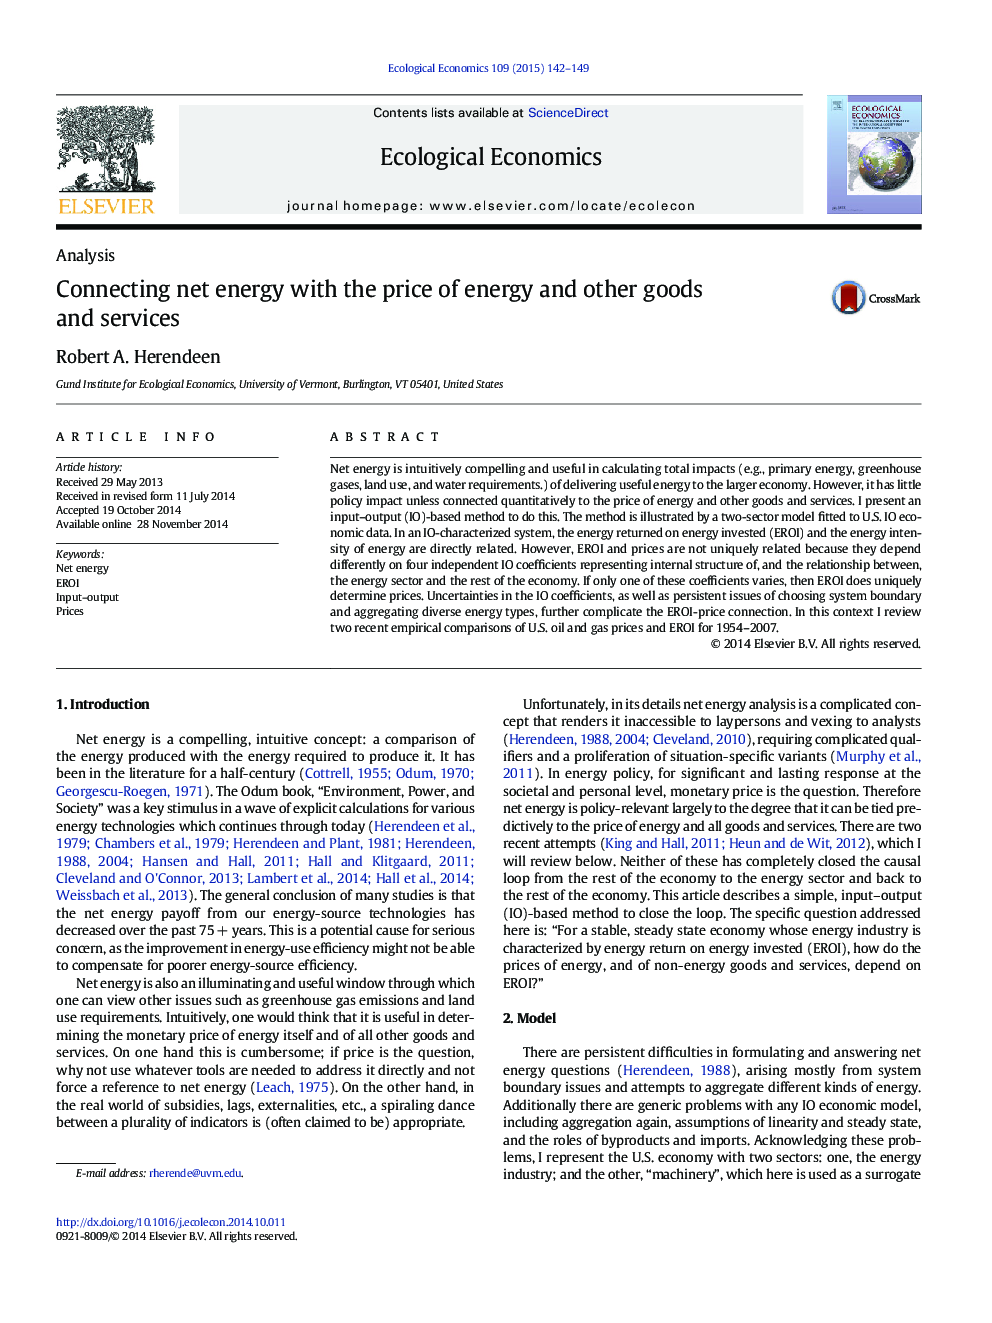 اتصال انرژی خالص با قیمت انرژی و سایر کالاها و خدمات 